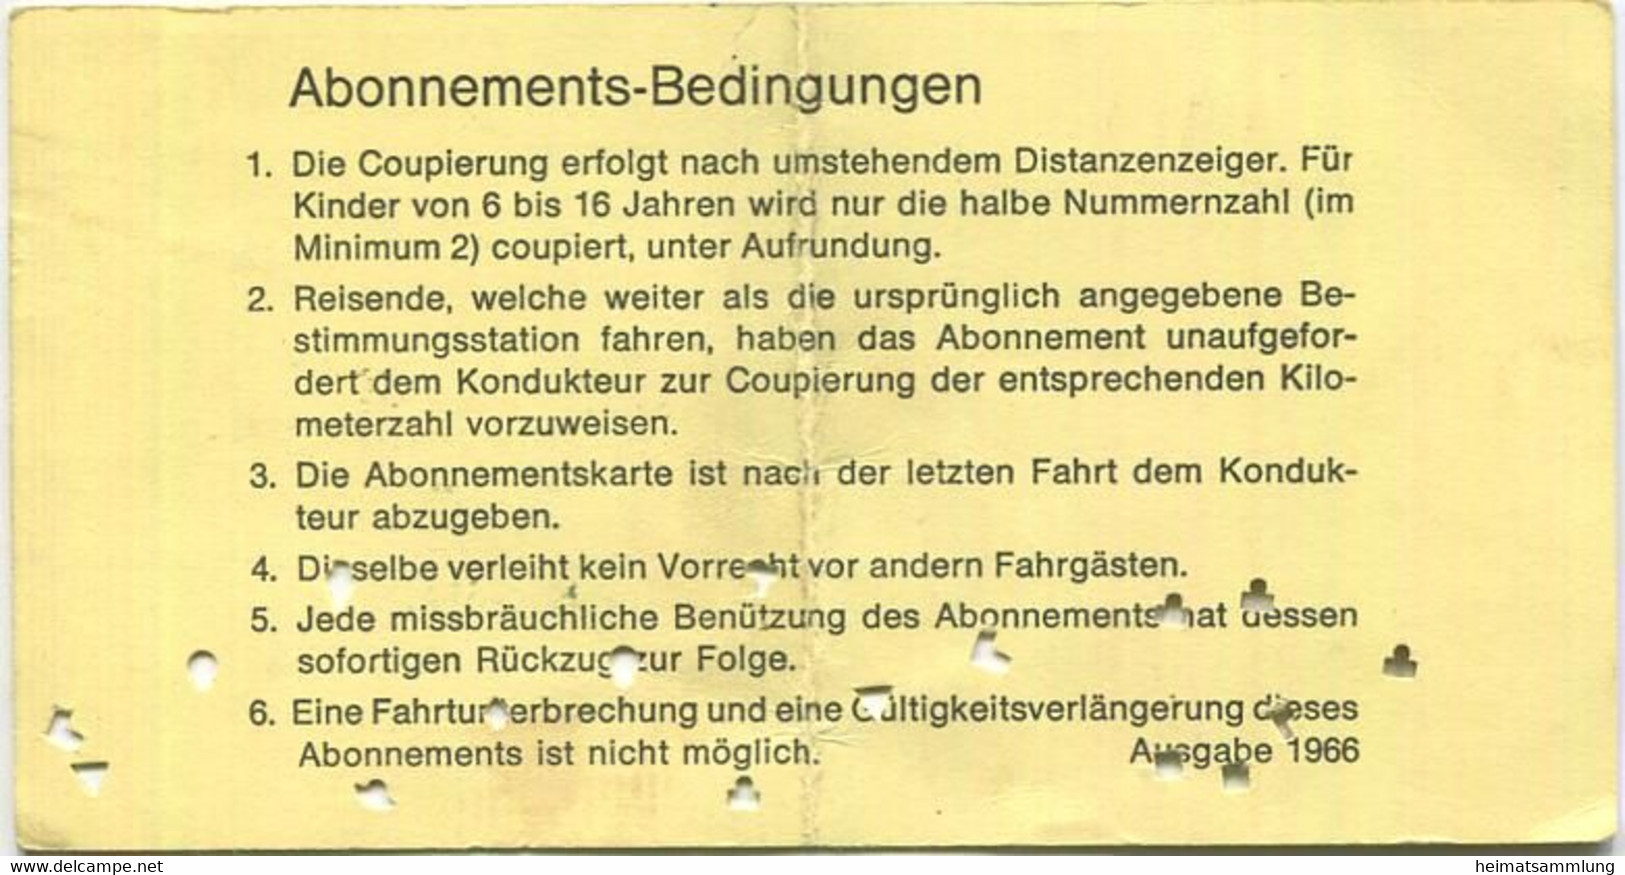 Schweiz - Solothurn-Niederbipp-Bahn - SNB 100 Km Inhaber-Abonnements-Karte - Fahrkarte 1968 Taxe Fr. 10.- - Europa